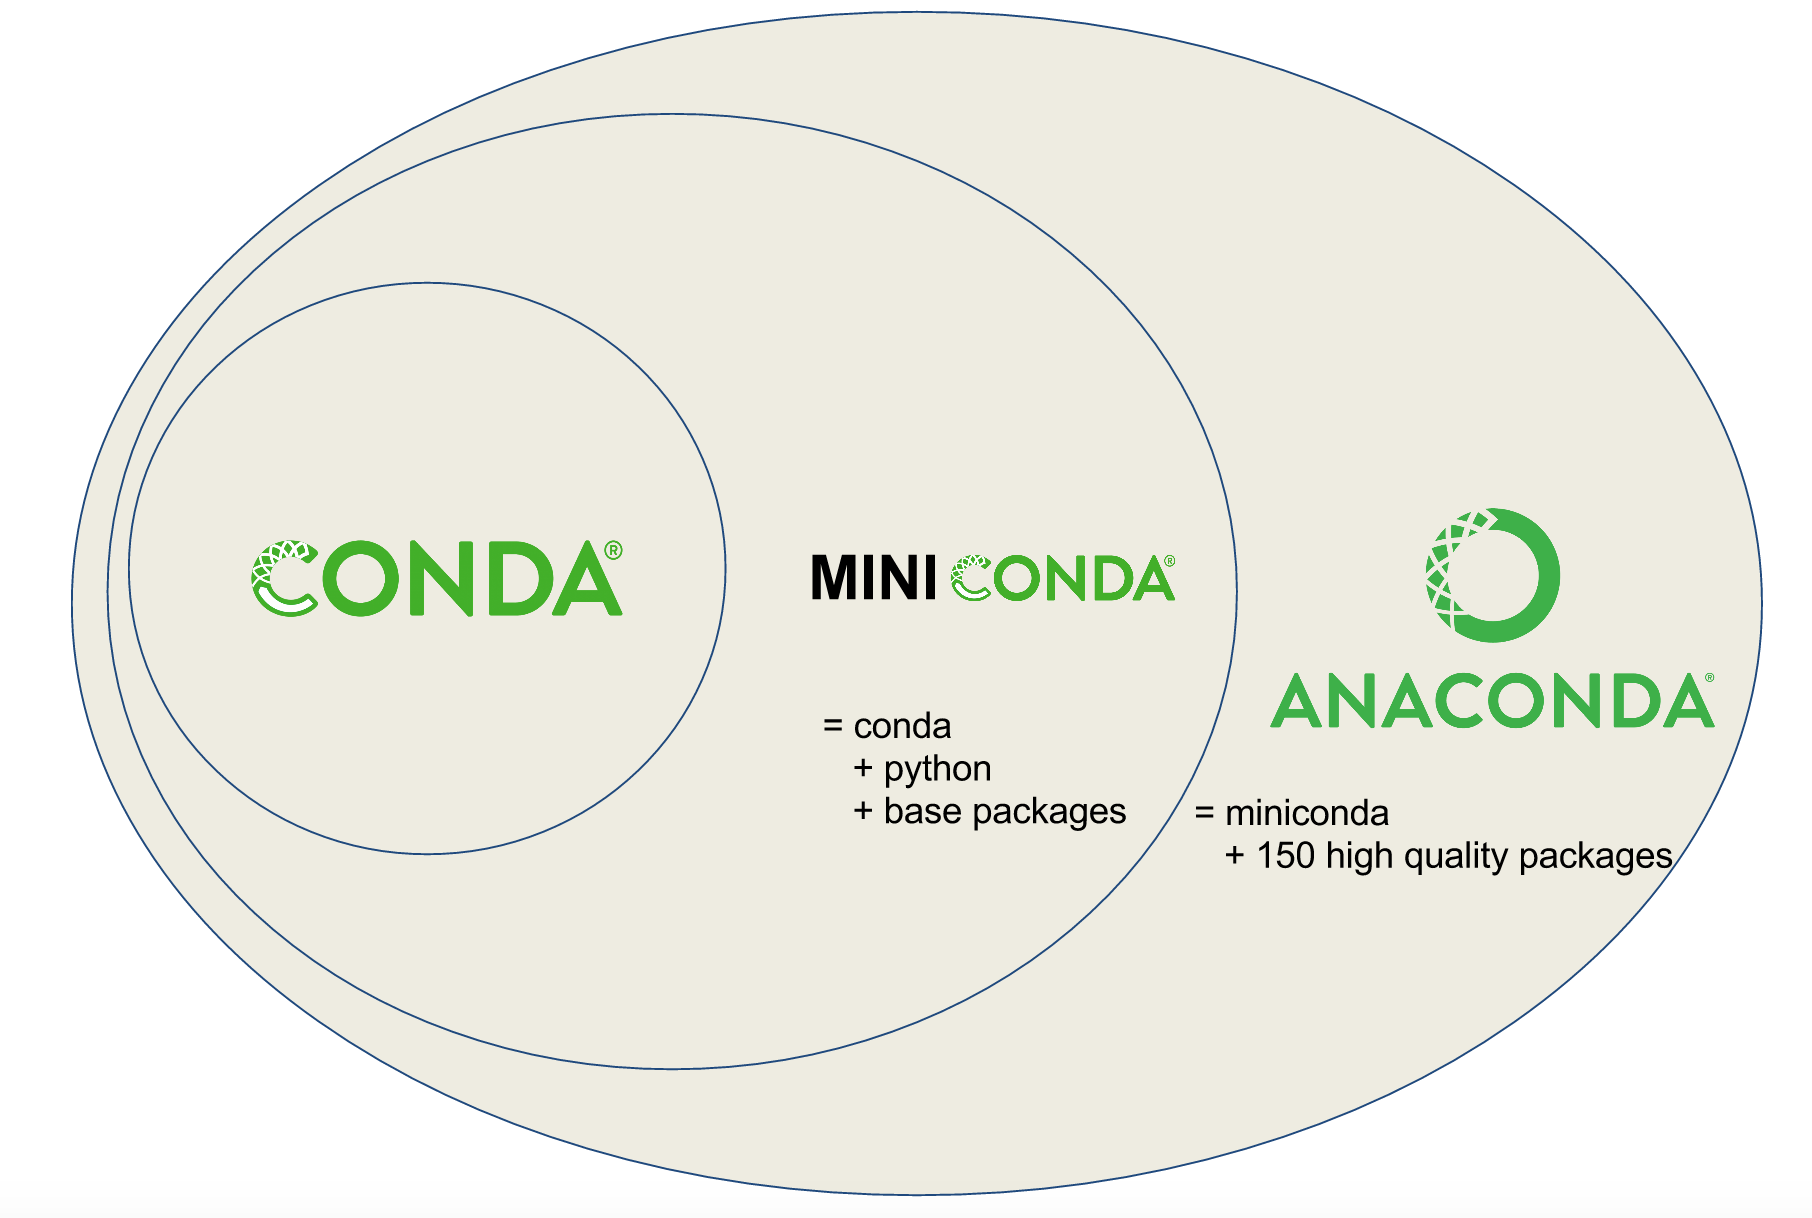 Diagram describing the relationship between Conda, Miniconda, and Anaconda.